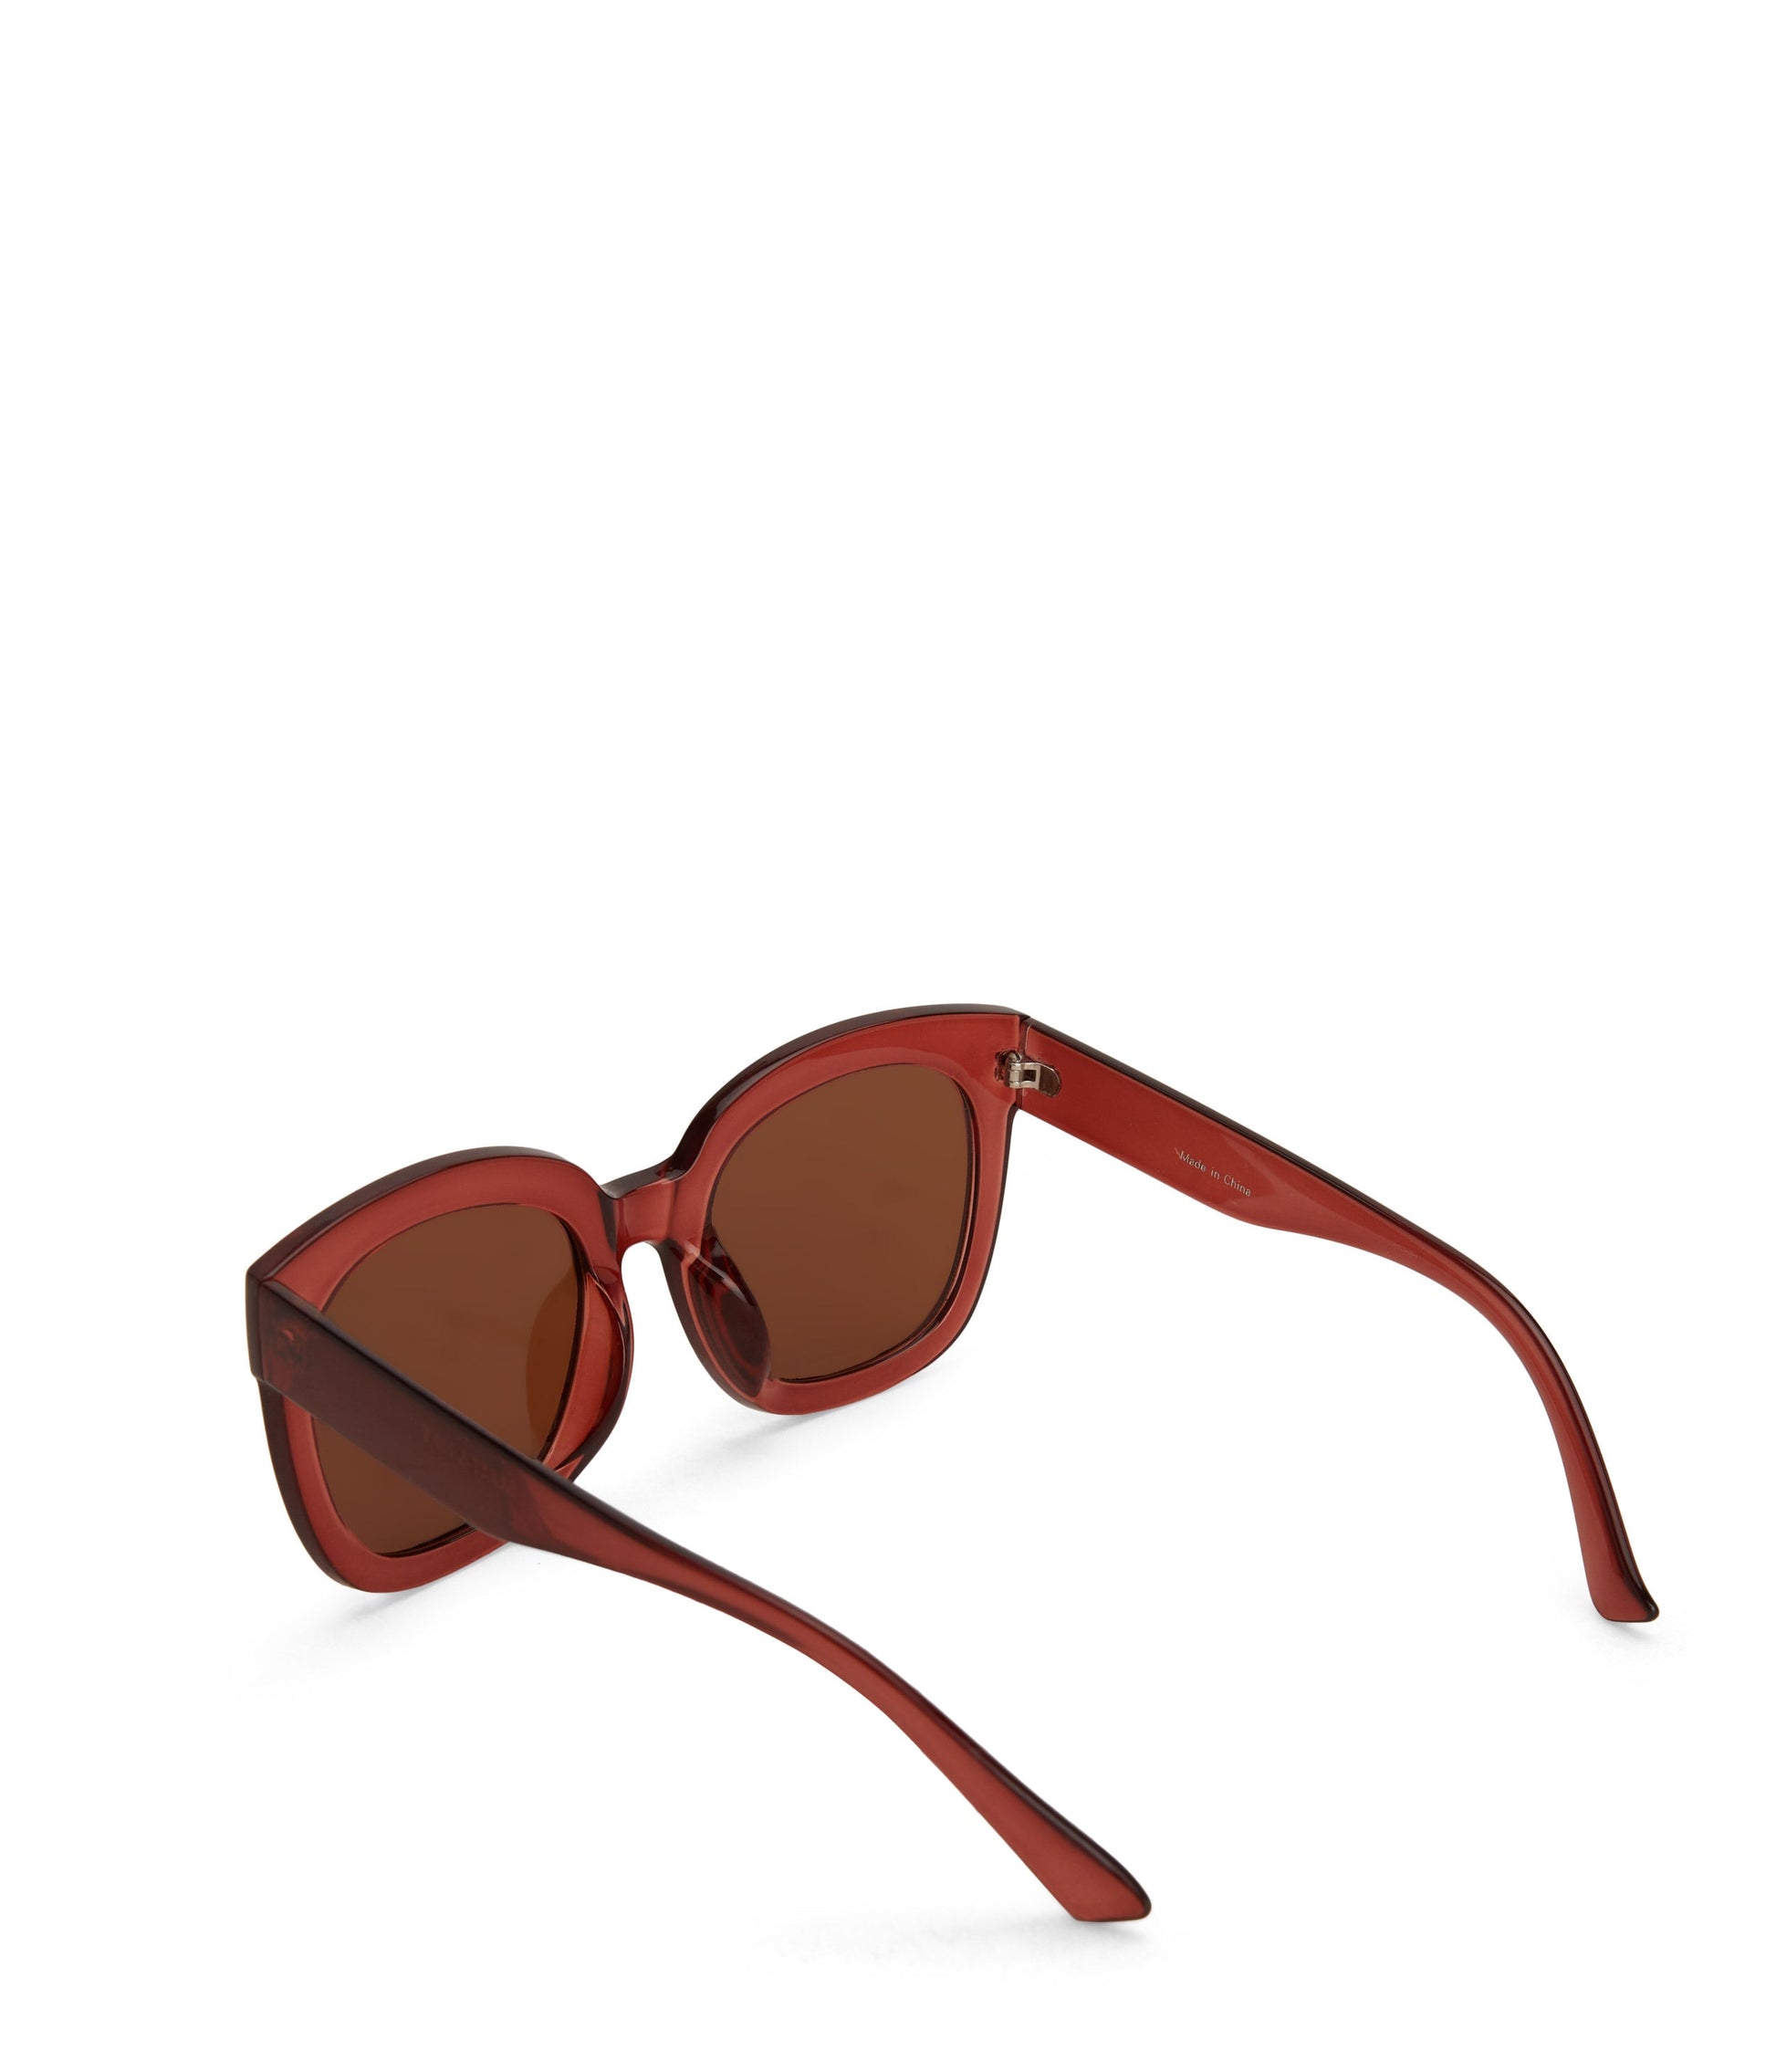 CHARLET Wayfarer Sunglasses | Color: Brown - variant::brown